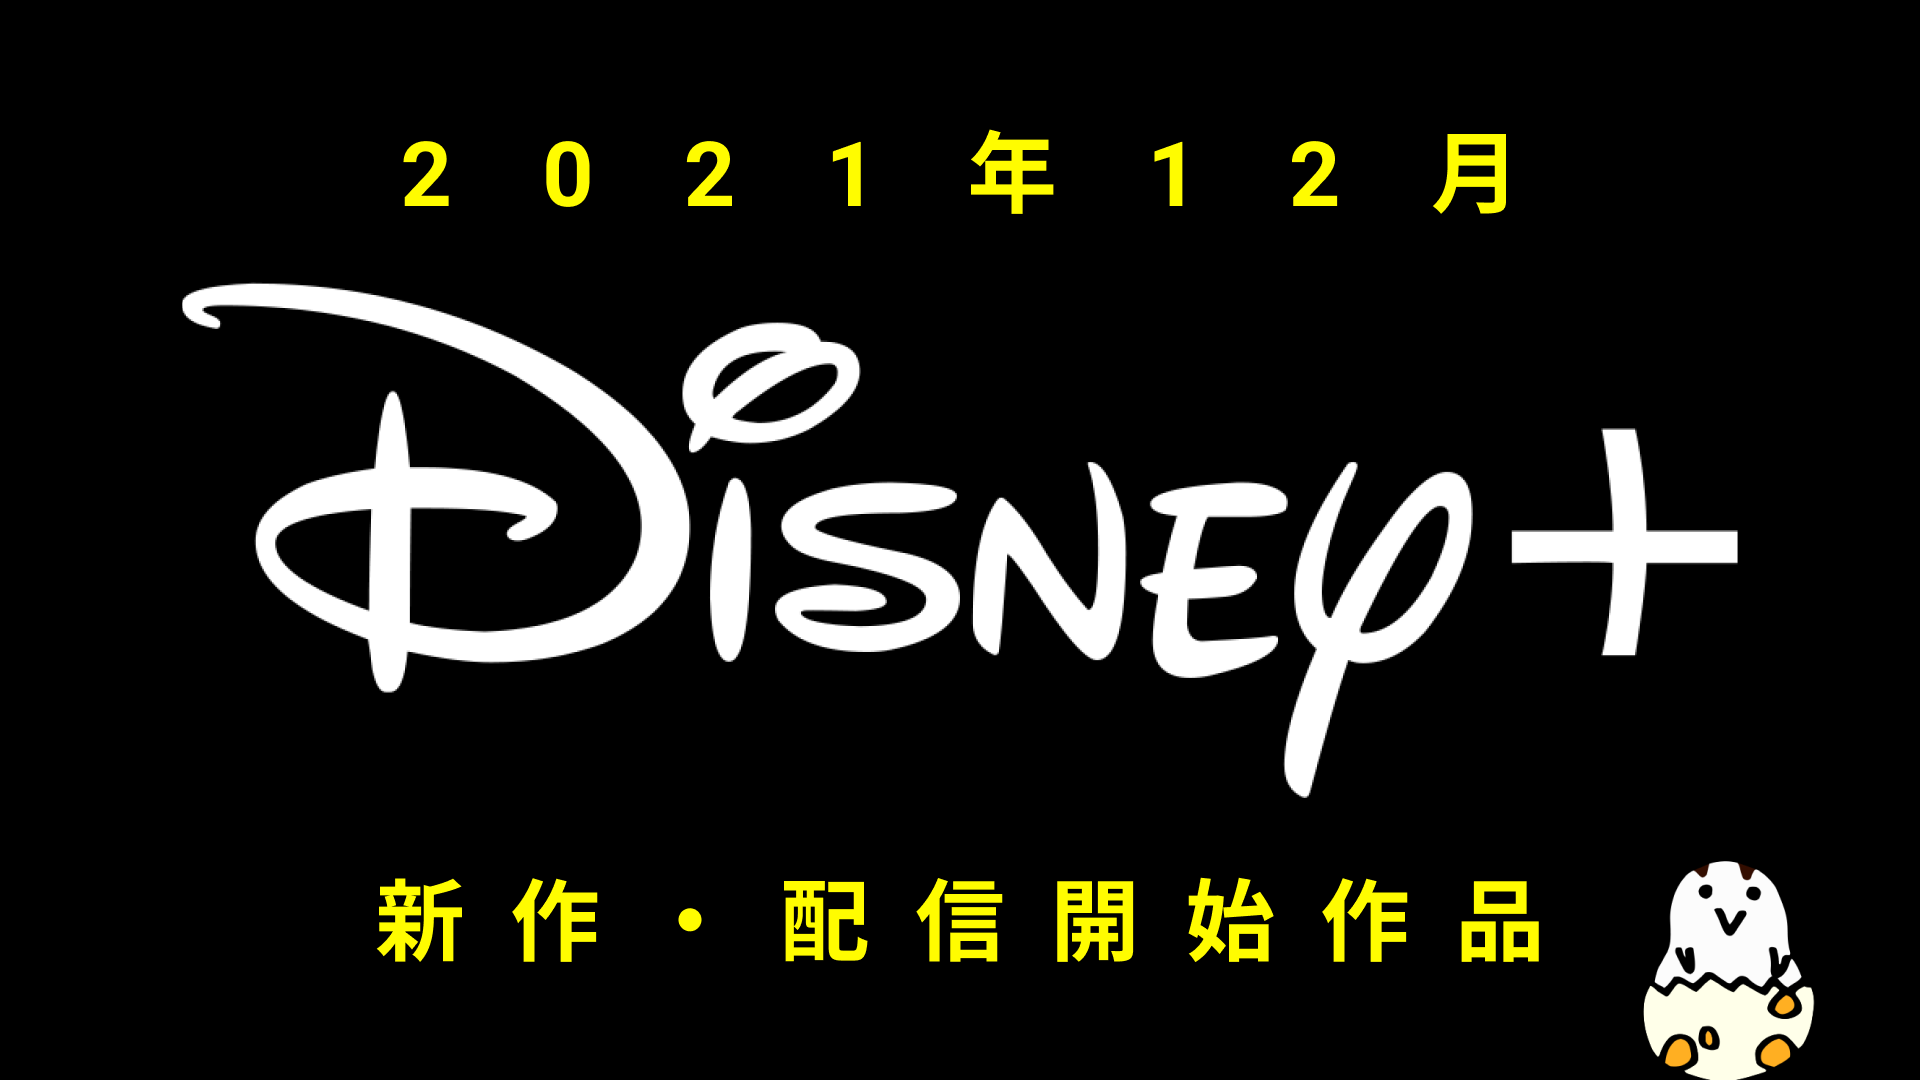 Disney+(ディズニープラス) 2021年12月の配信作品一覧  スター・ウォーズ『ボバ・フェット』が登場！！